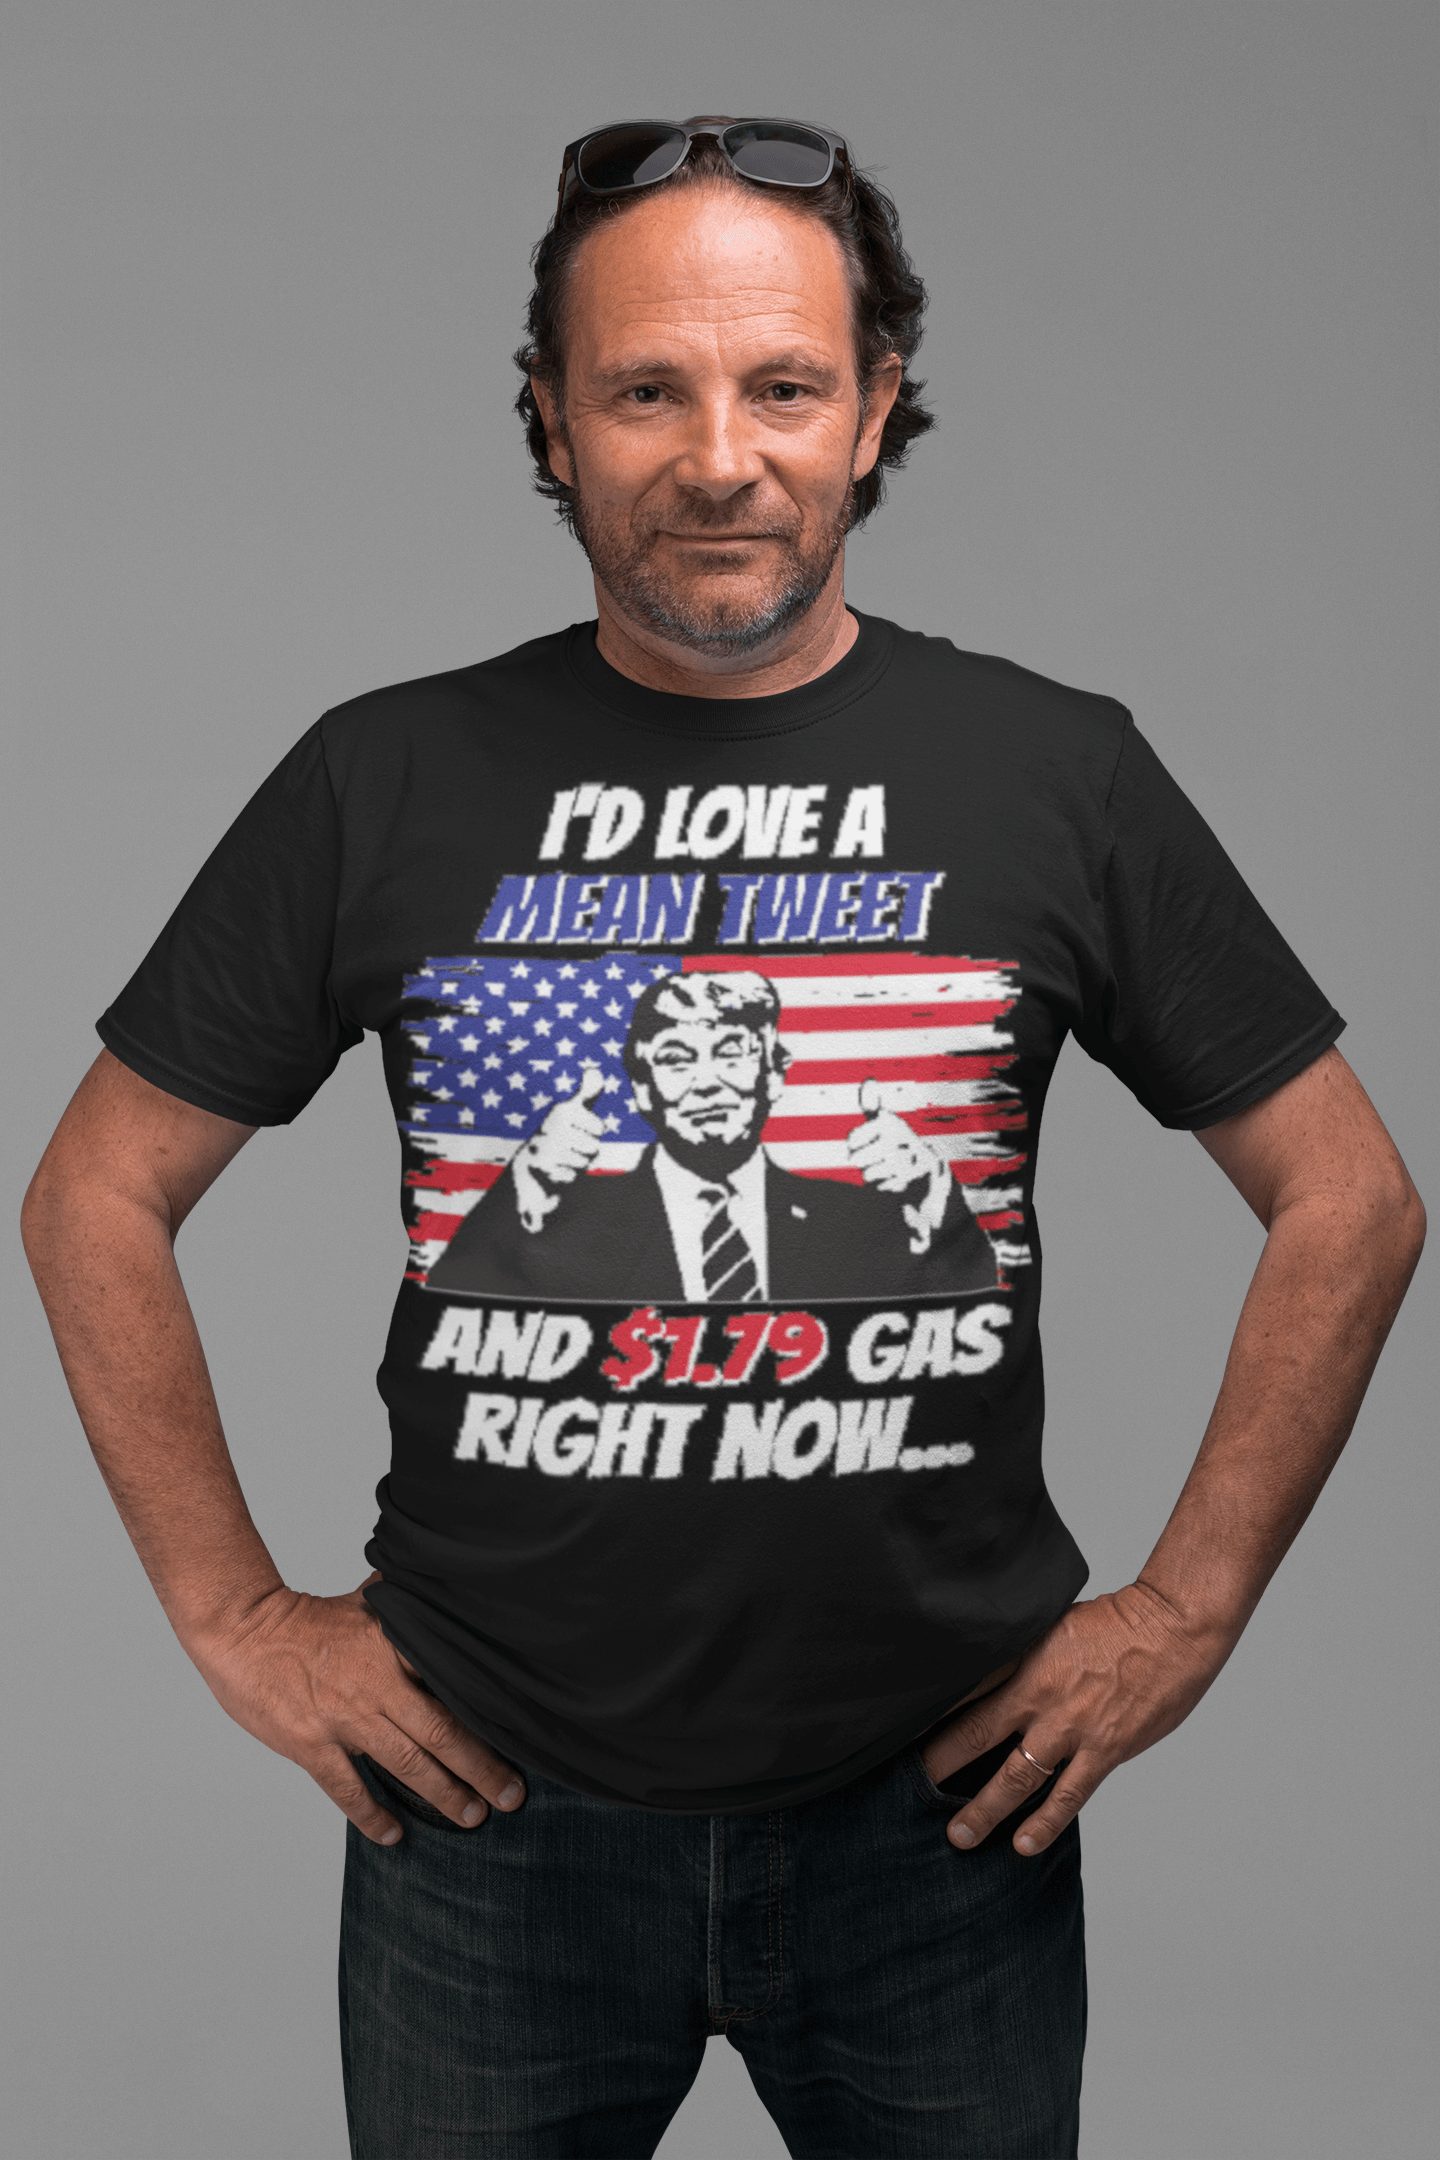 Short Sleeve Political T-shirt Mean Tweet $1.75 Gas Top Koala Trump Tee - TopKoalaTee